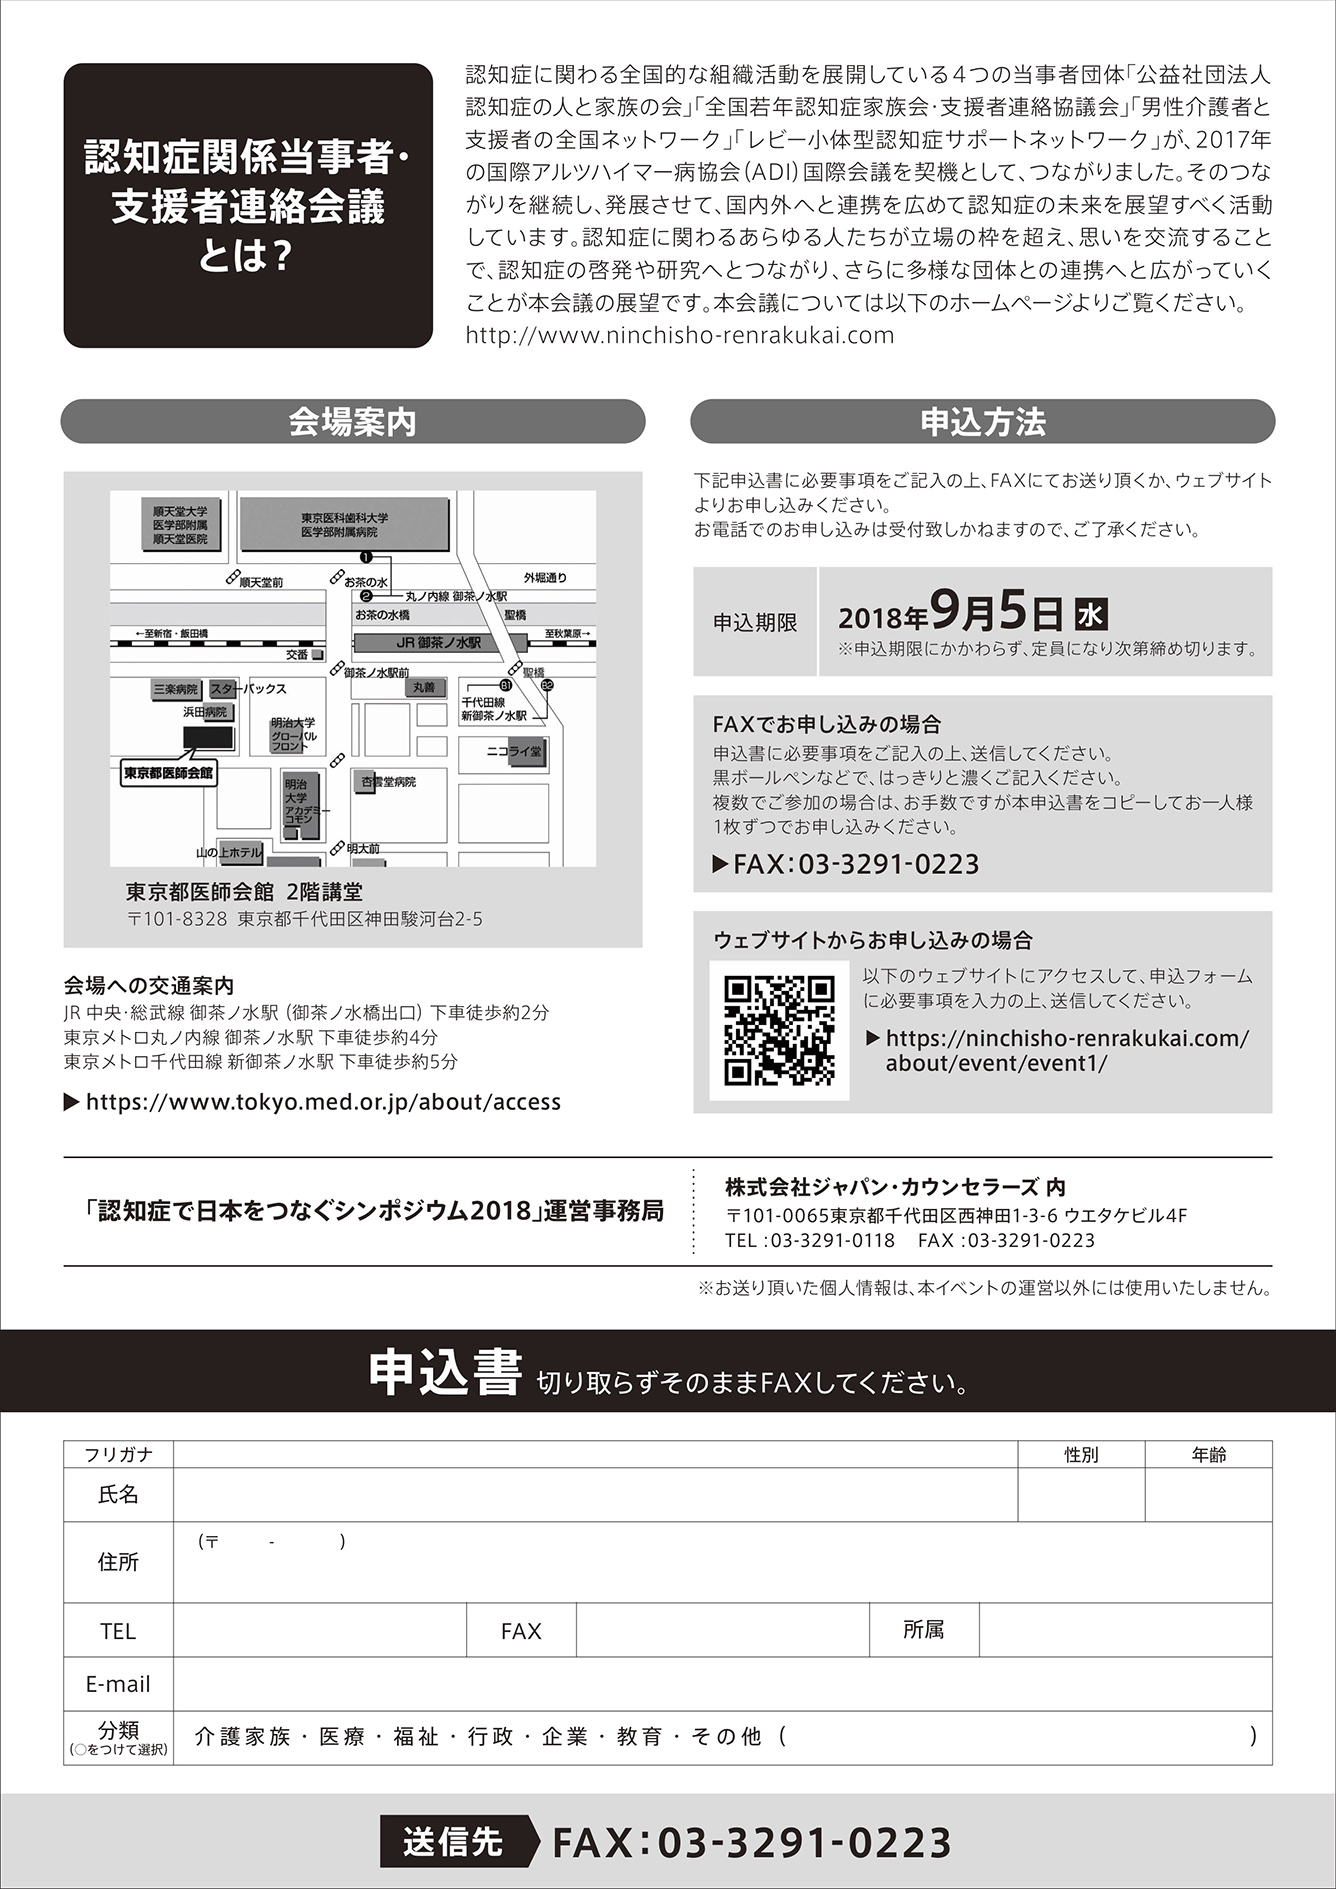 認知症で日本をつなぐシンポジウム2018チラシの2ページ目の画像